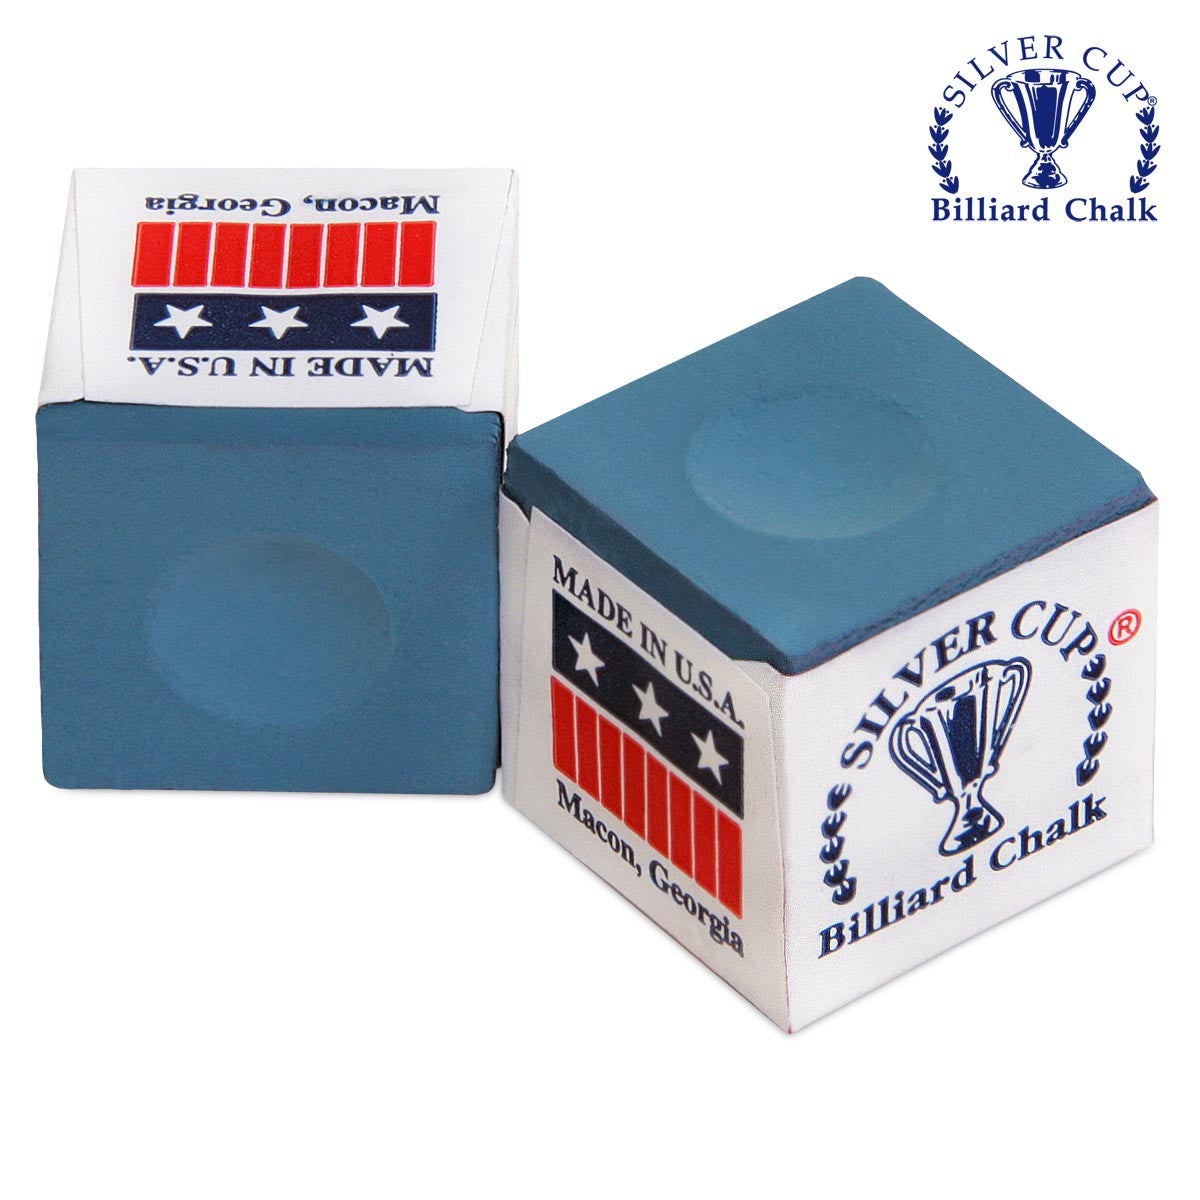 Silver Cup 144 pcs blue chalk box